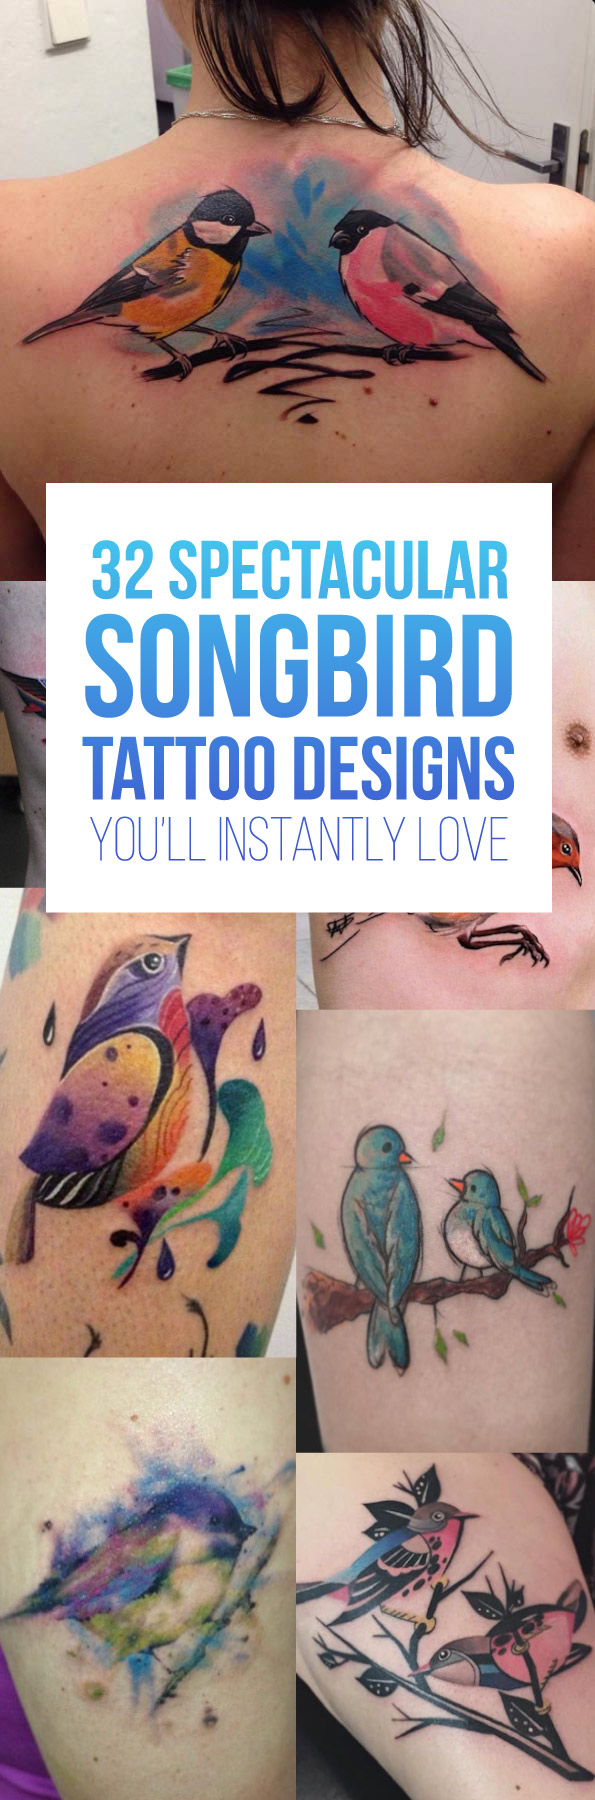 Songbird Tattoo Designs | TattooBlend